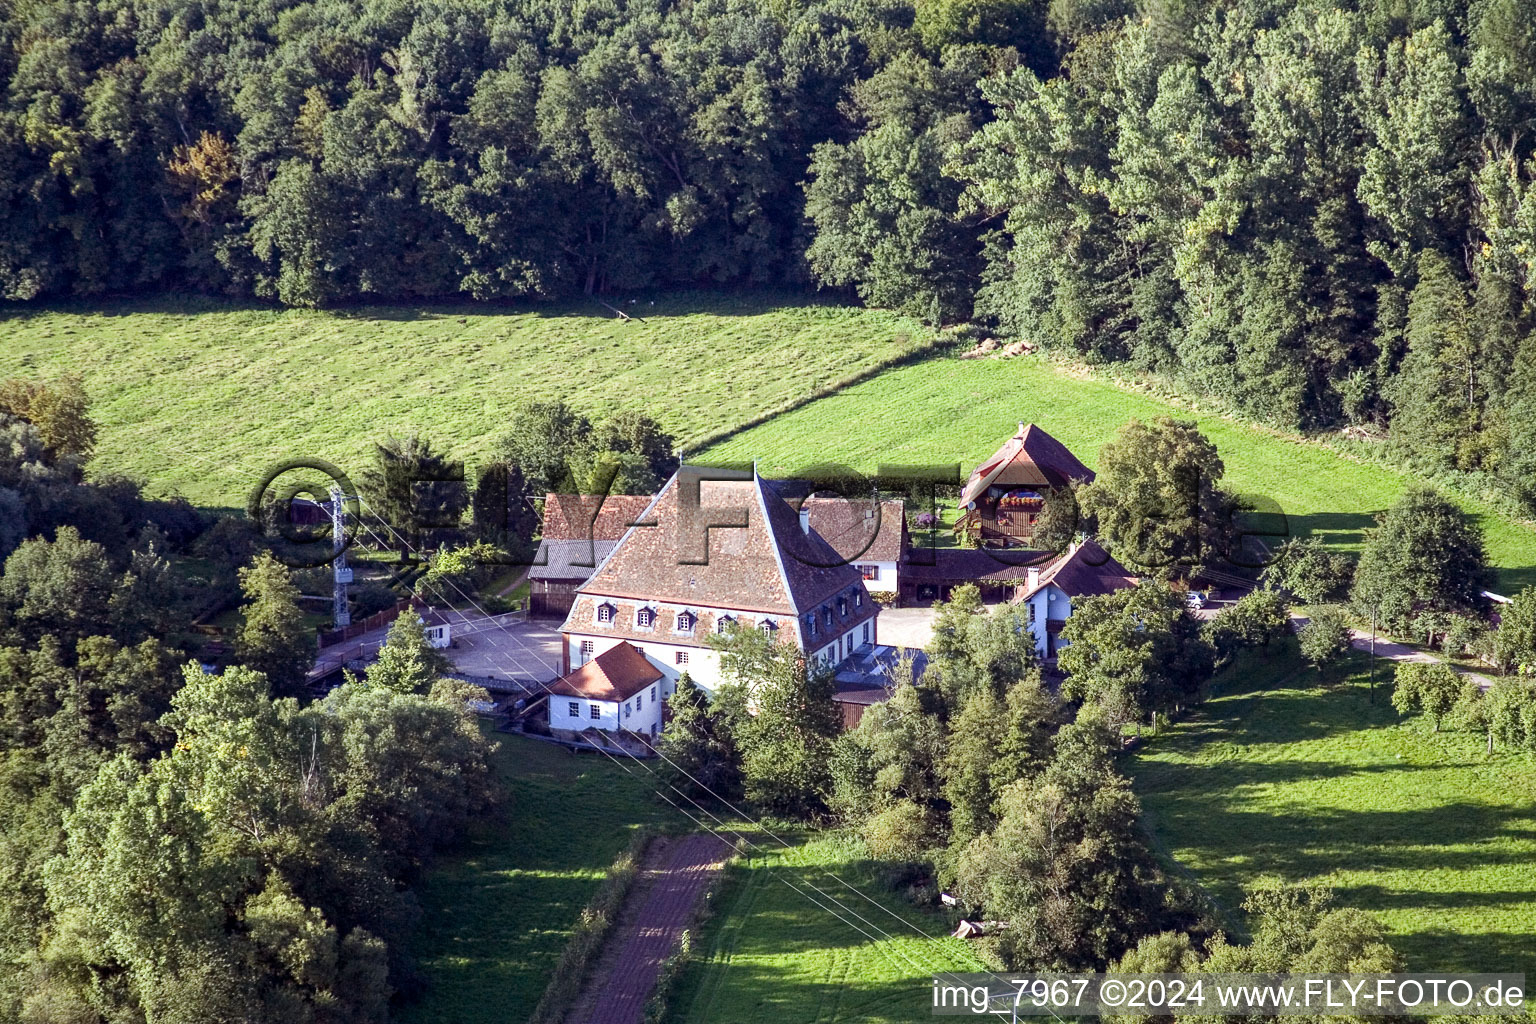 Vue aérienne de Moulin à eau historique sur la ferme d'une ferme en bordure de champs cultivés dans le quartier Bienwaldmühle de Scheibenhardt à Bienwaldmühle dans le département Rhénanie-Palatinat, Allemagne